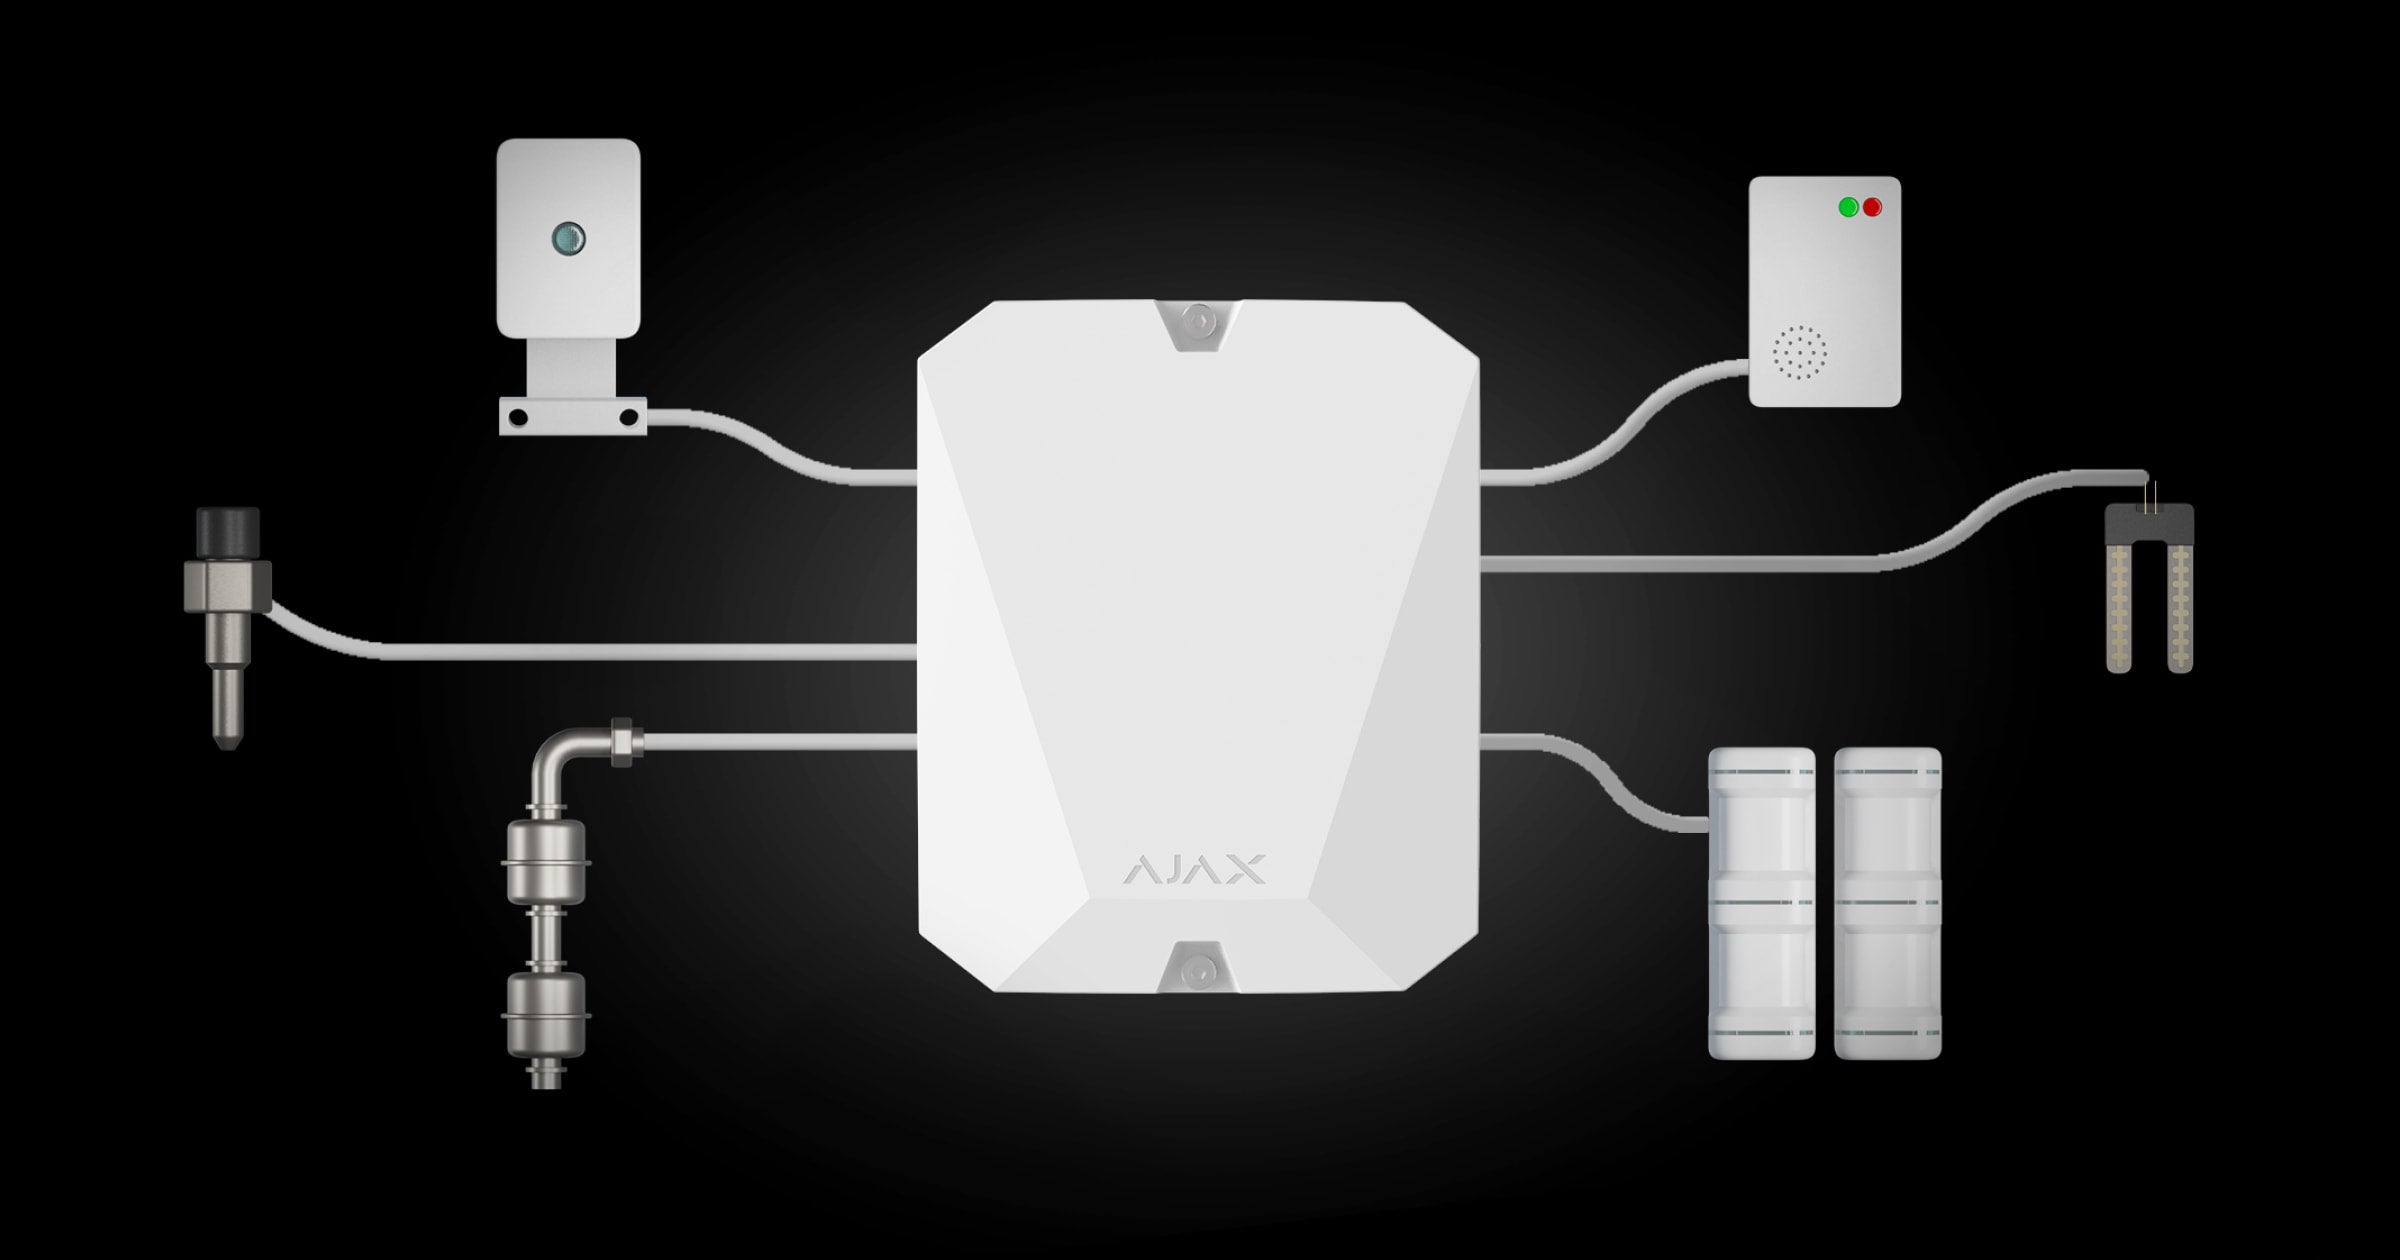 باللون الابيض من اجاكس Multi Transmitter وحدة لتوصيل الإنذار السلكي وإدارة الأمان عبر التطبيق